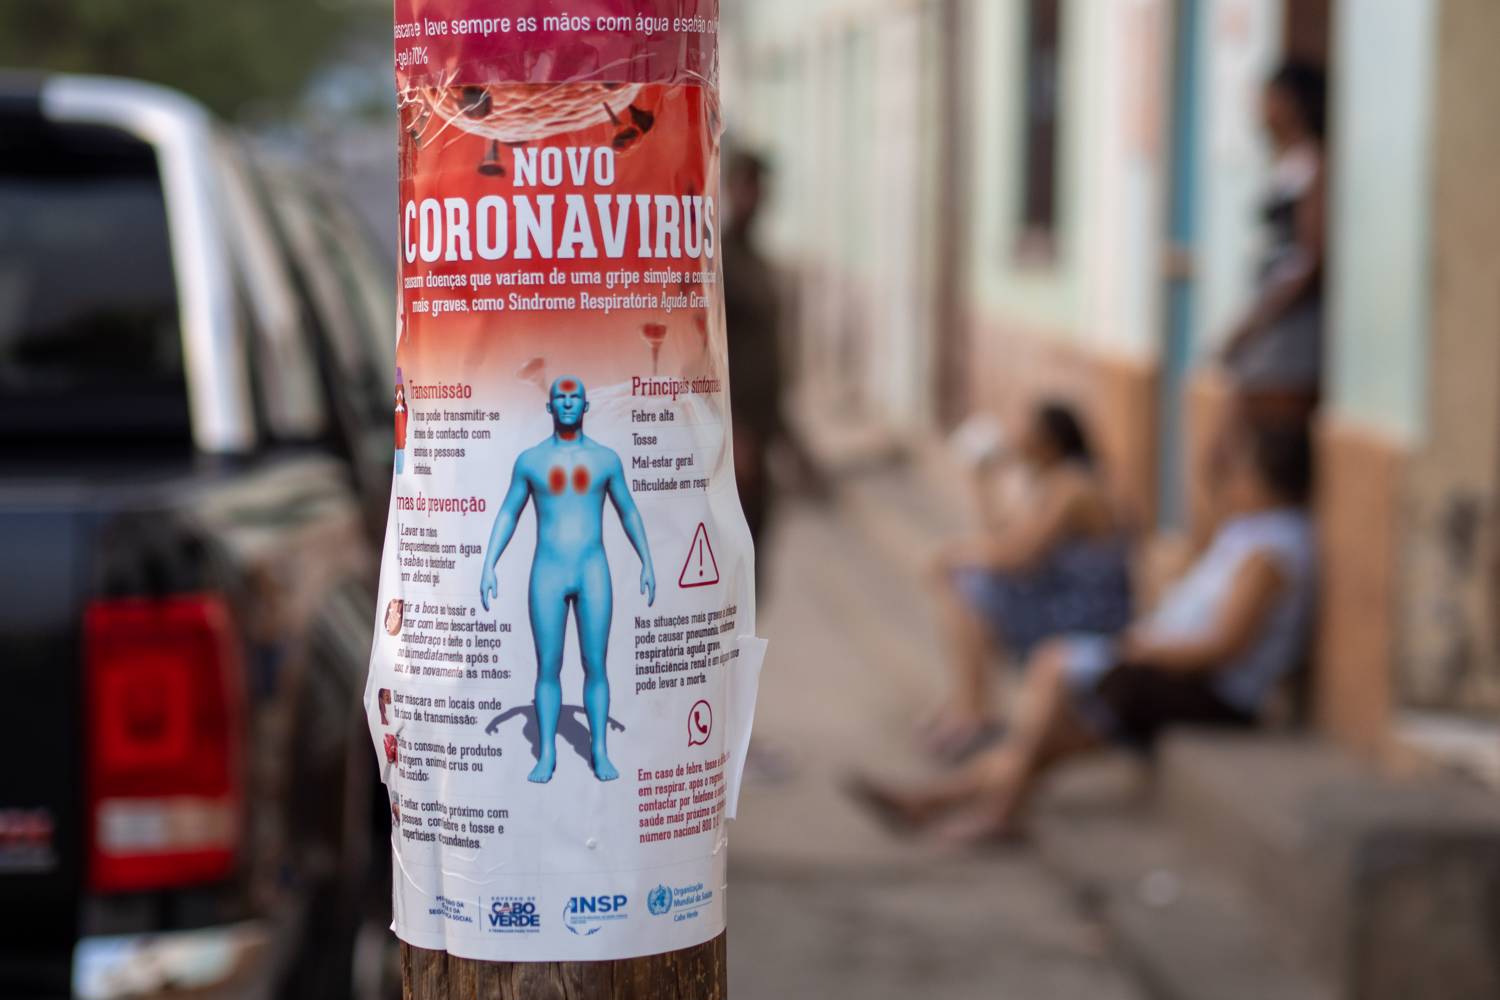 Coronavirus awareness poster, Cape Verde.